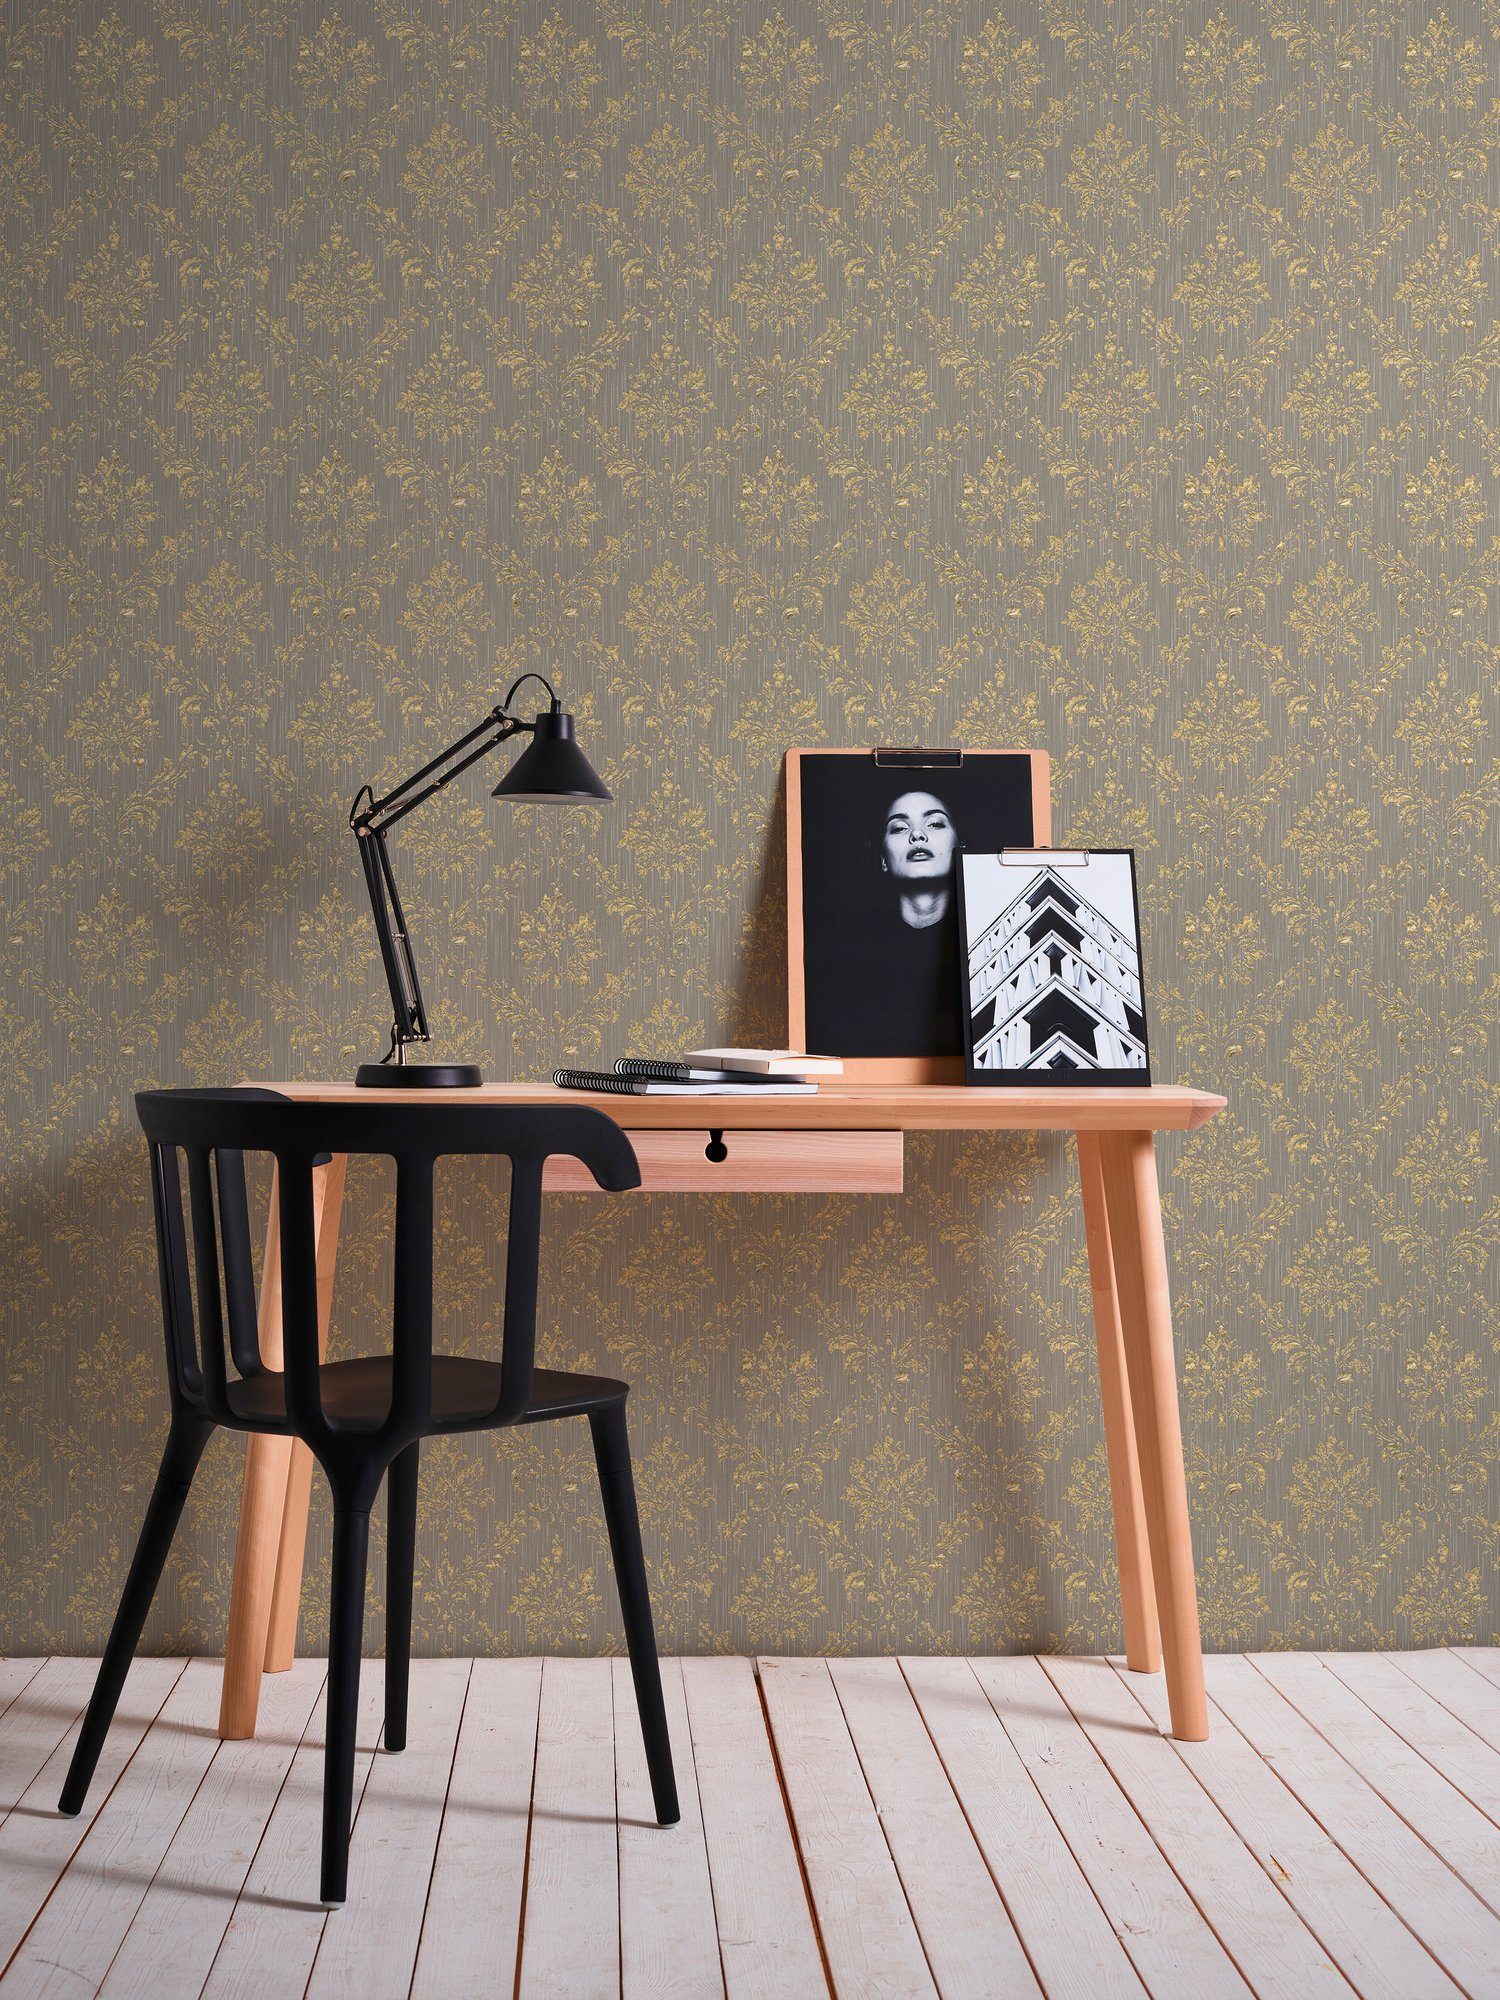 A.S. Création glänzend, samtig, Barock matt, Paper Architects Metallic Silk, gold/beige Textiltapete Barock, Ornament Tapete